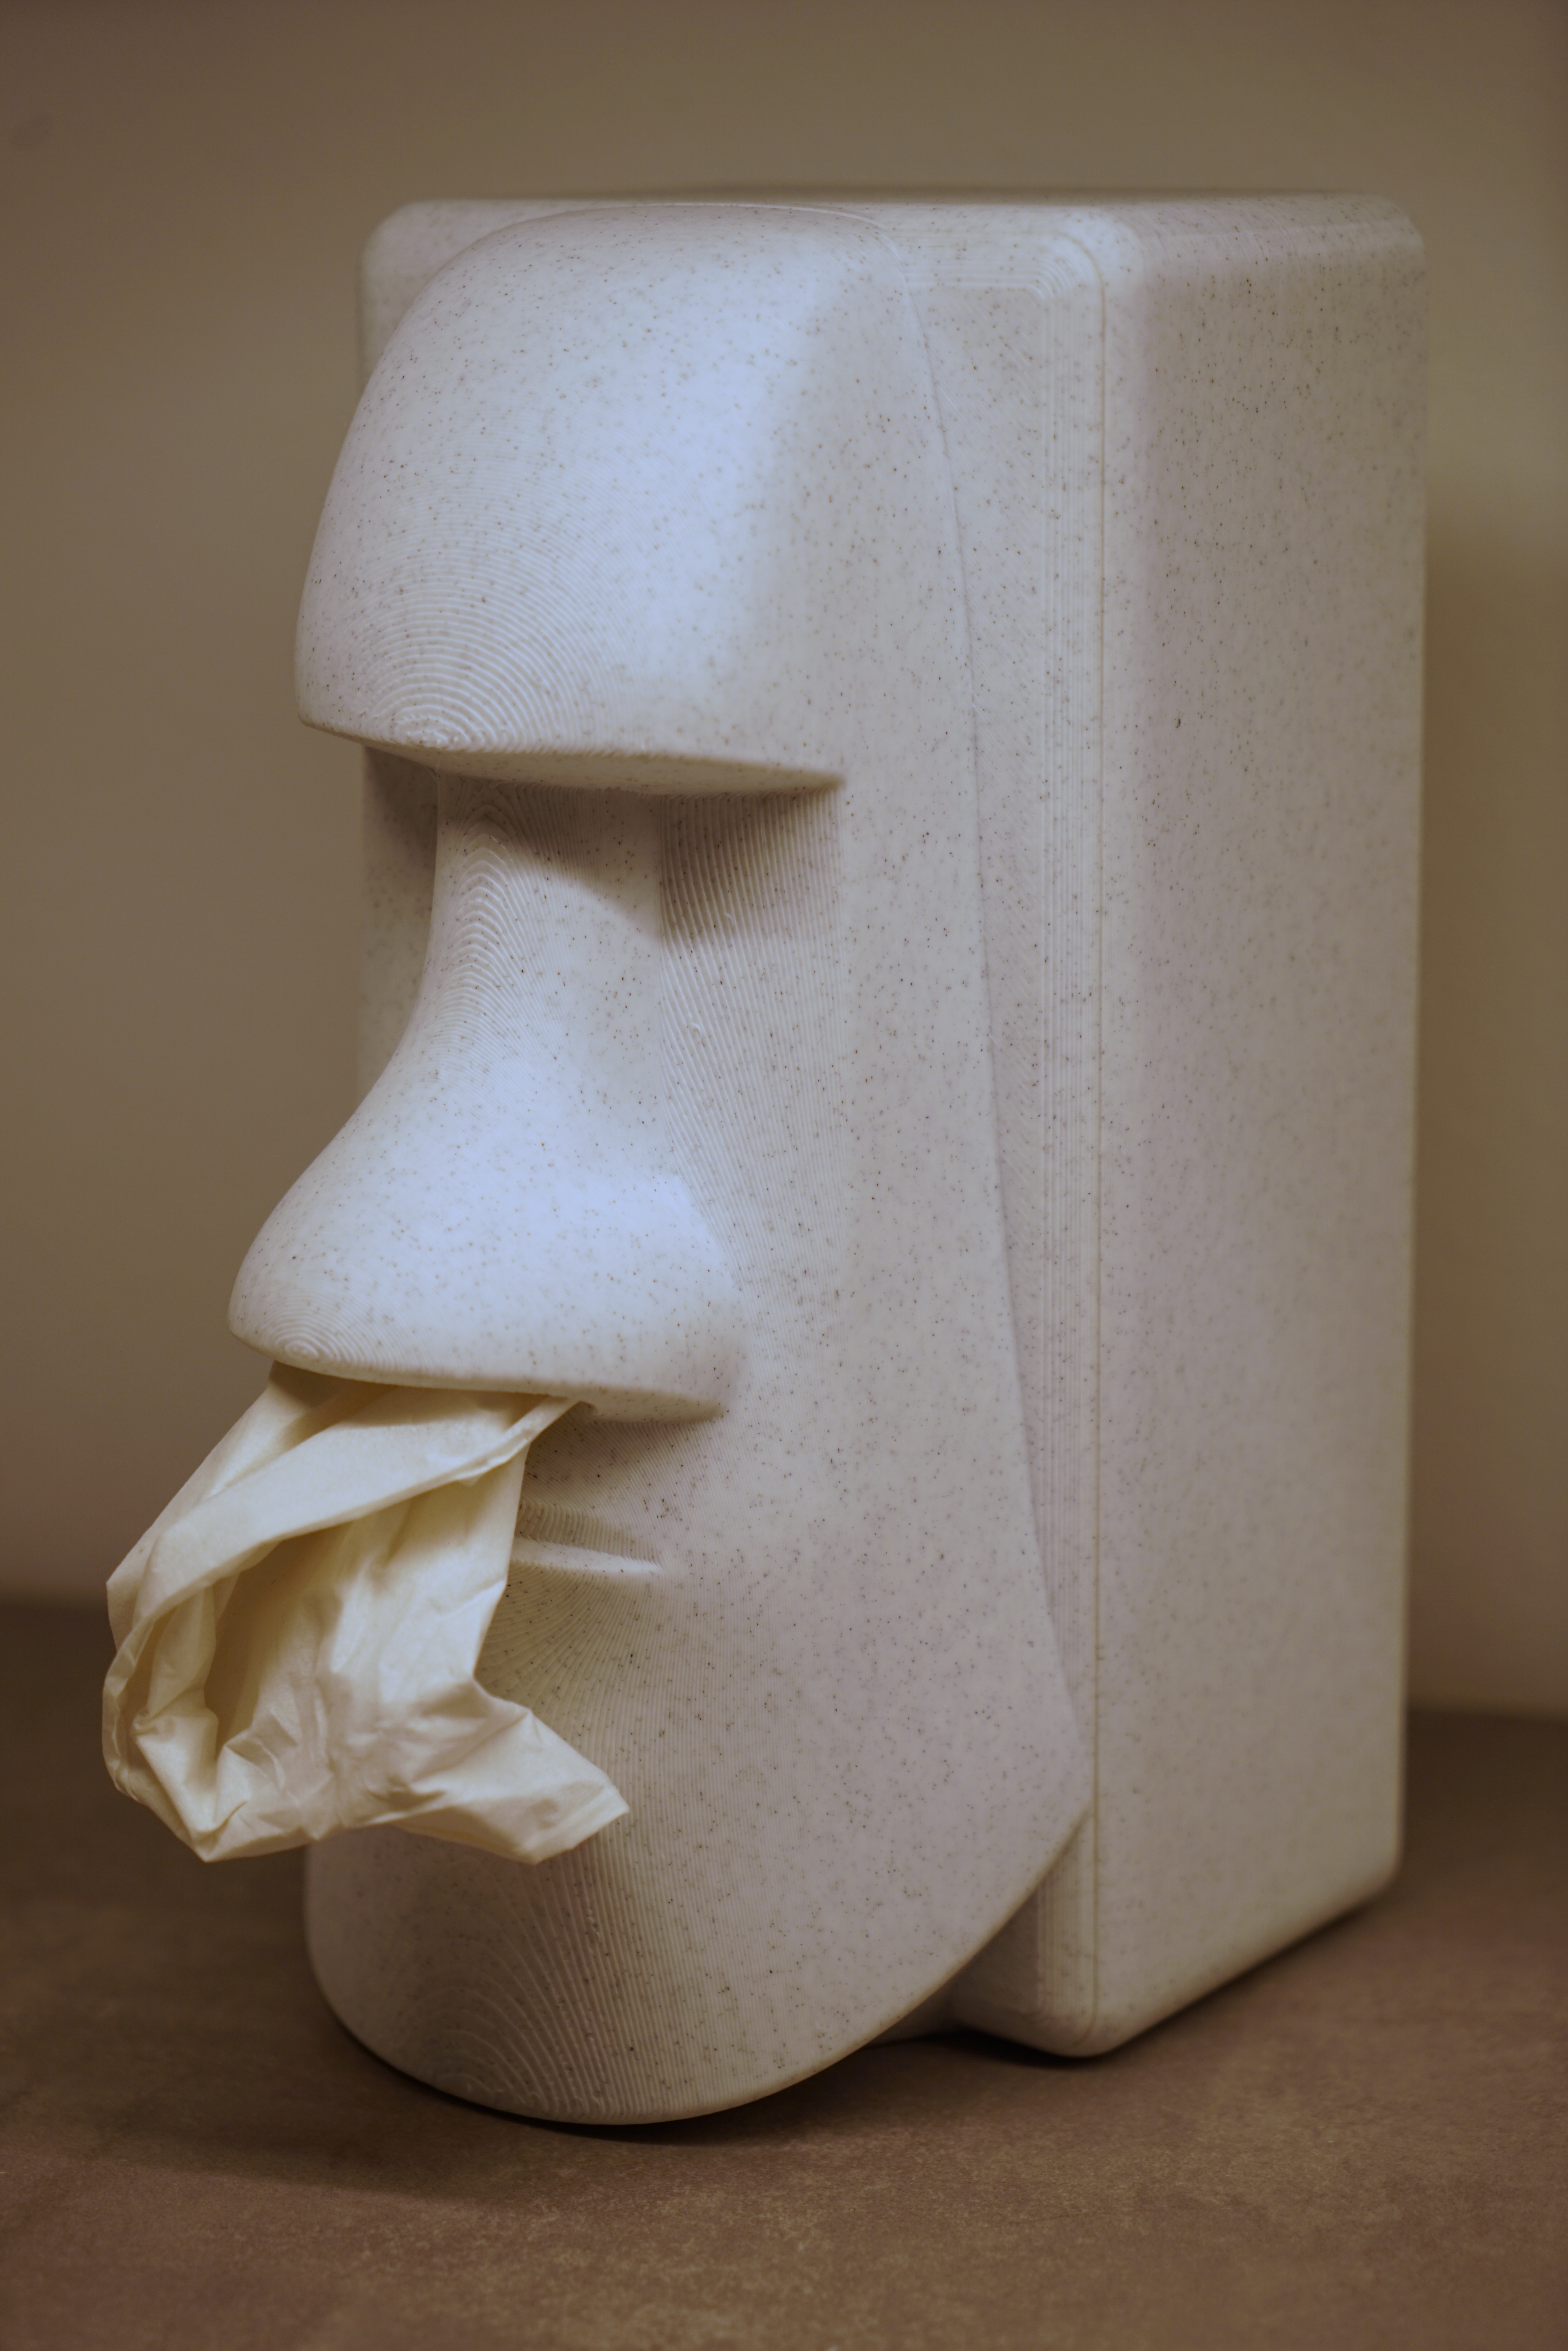 Easter island moai tissue box